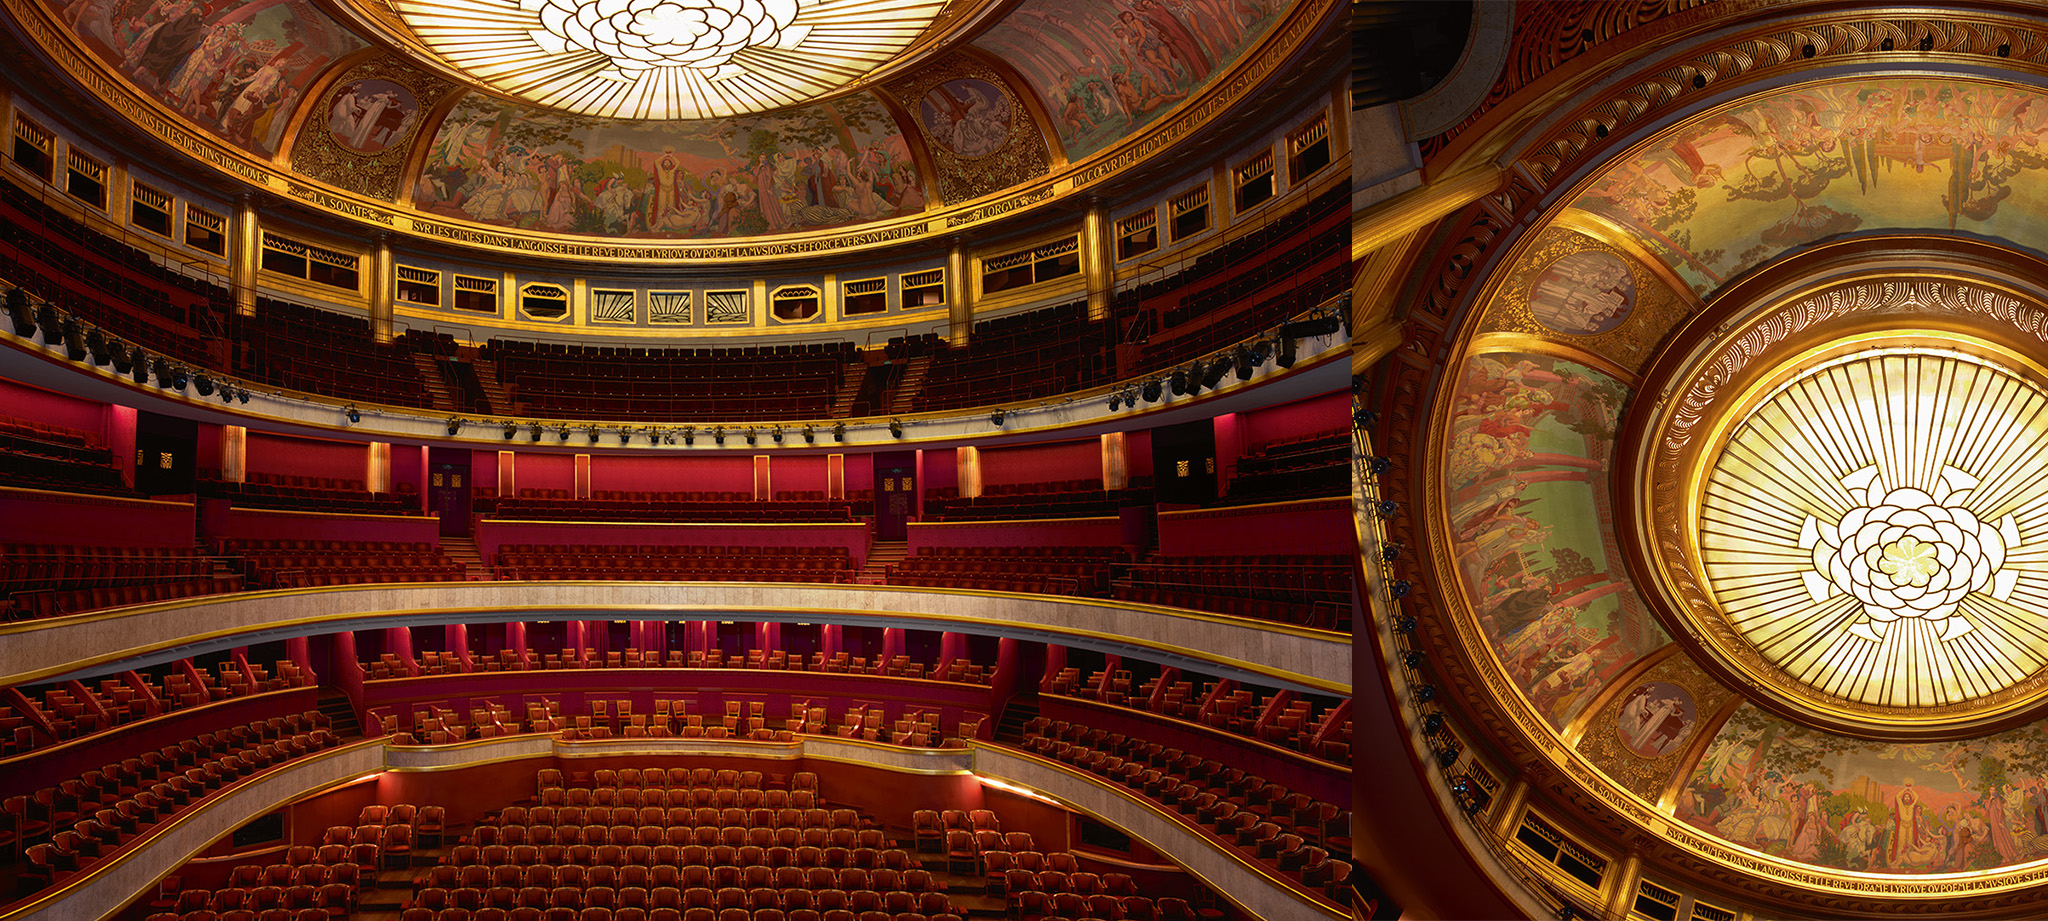 photos of the Théâtre des Champs-Elysées and Théâtre des Champs-Elysées ceiling